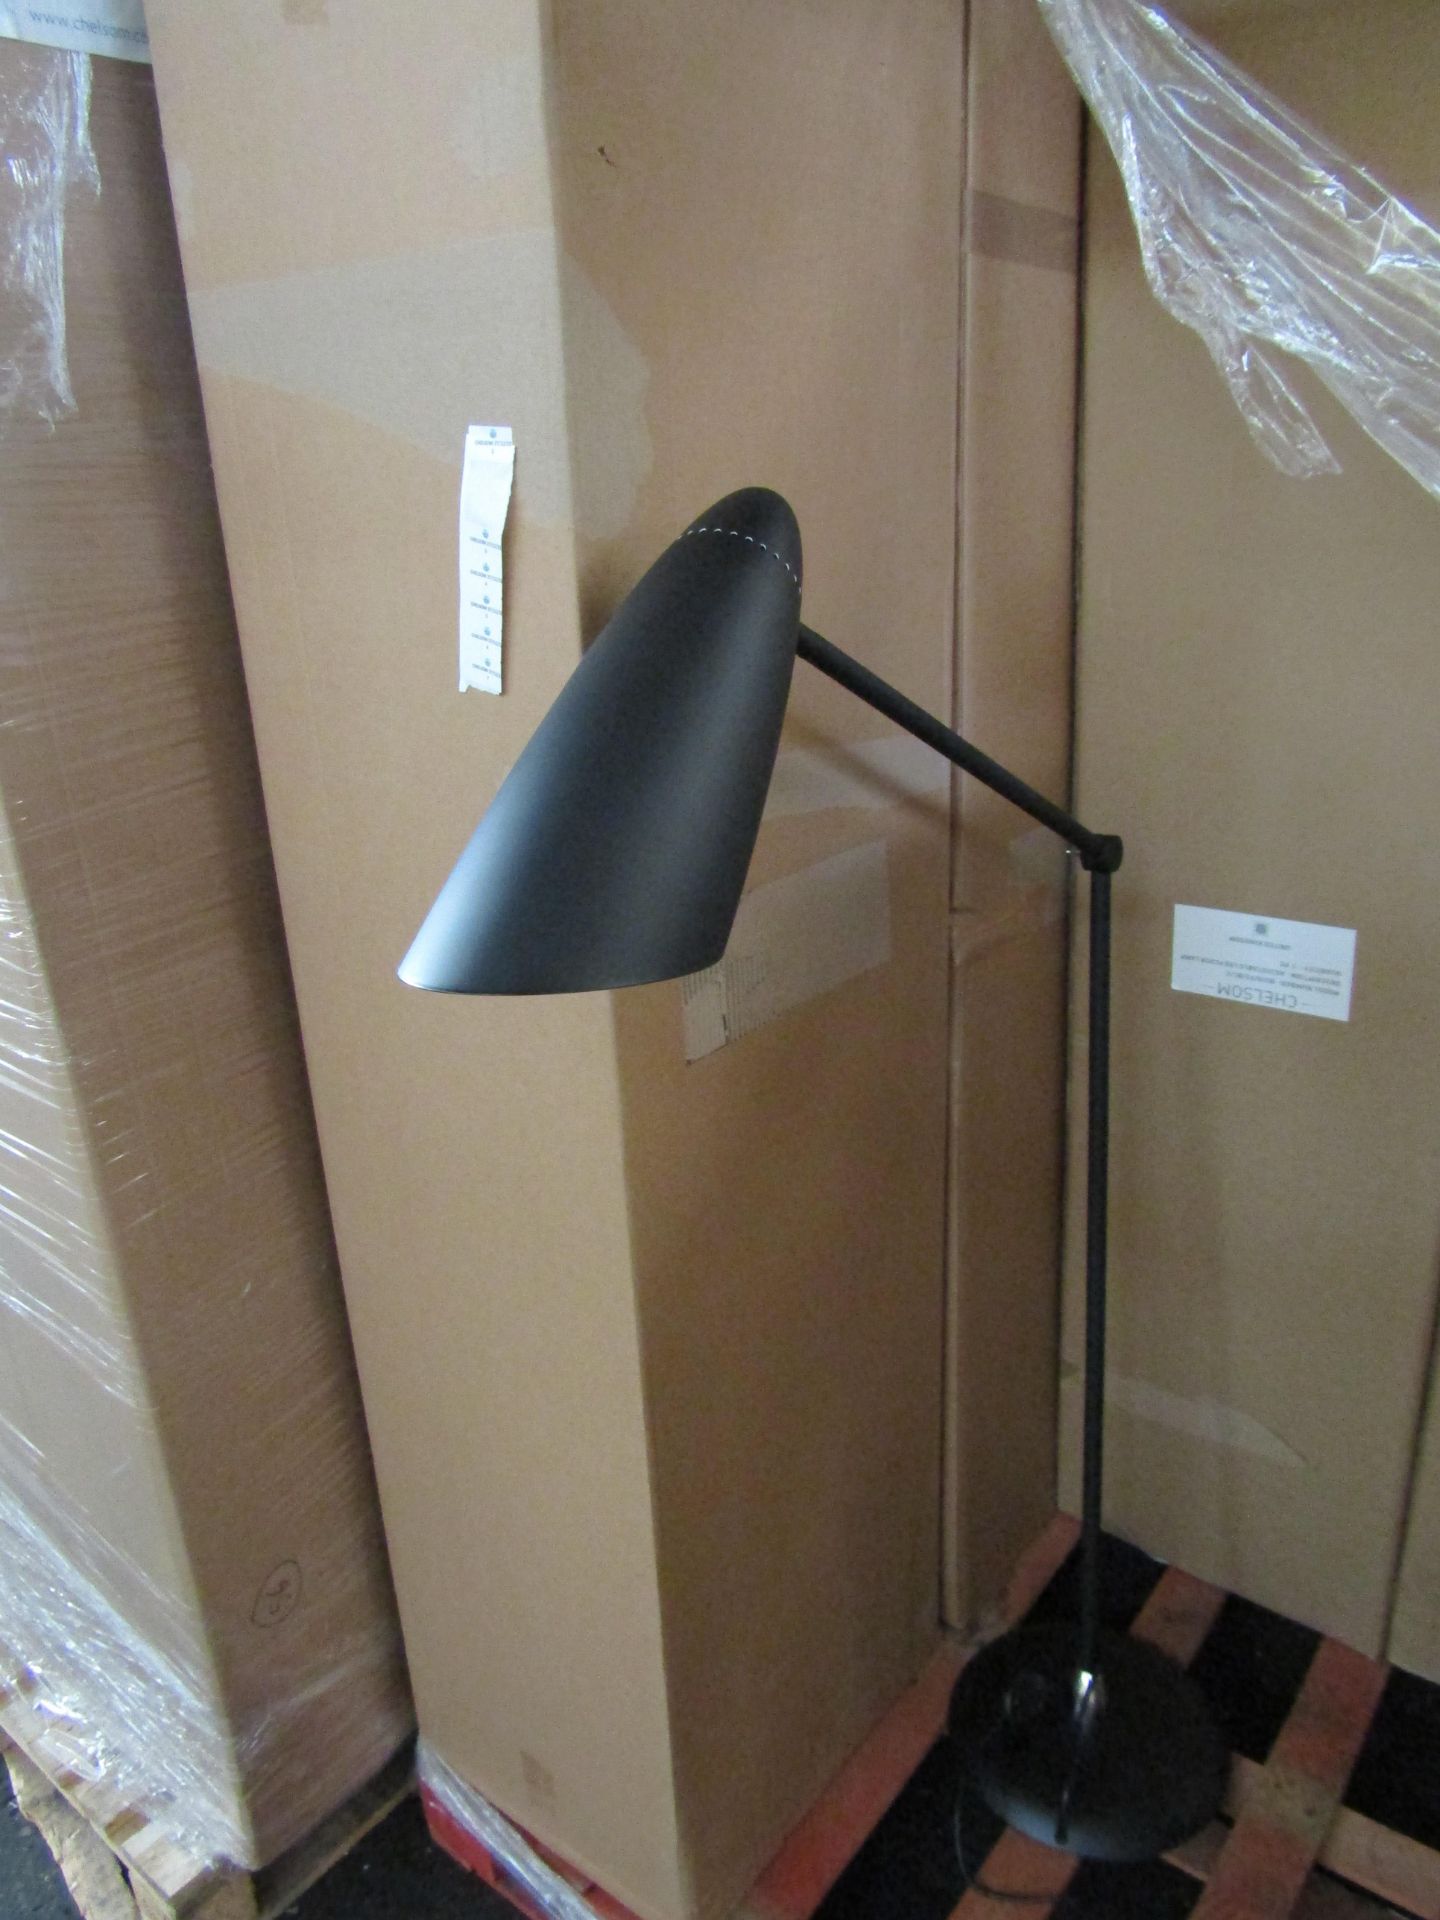 Chelsom Adjustable LED Floor Lamp Black & Chrome BU/8/FS/BL/C new & boxed